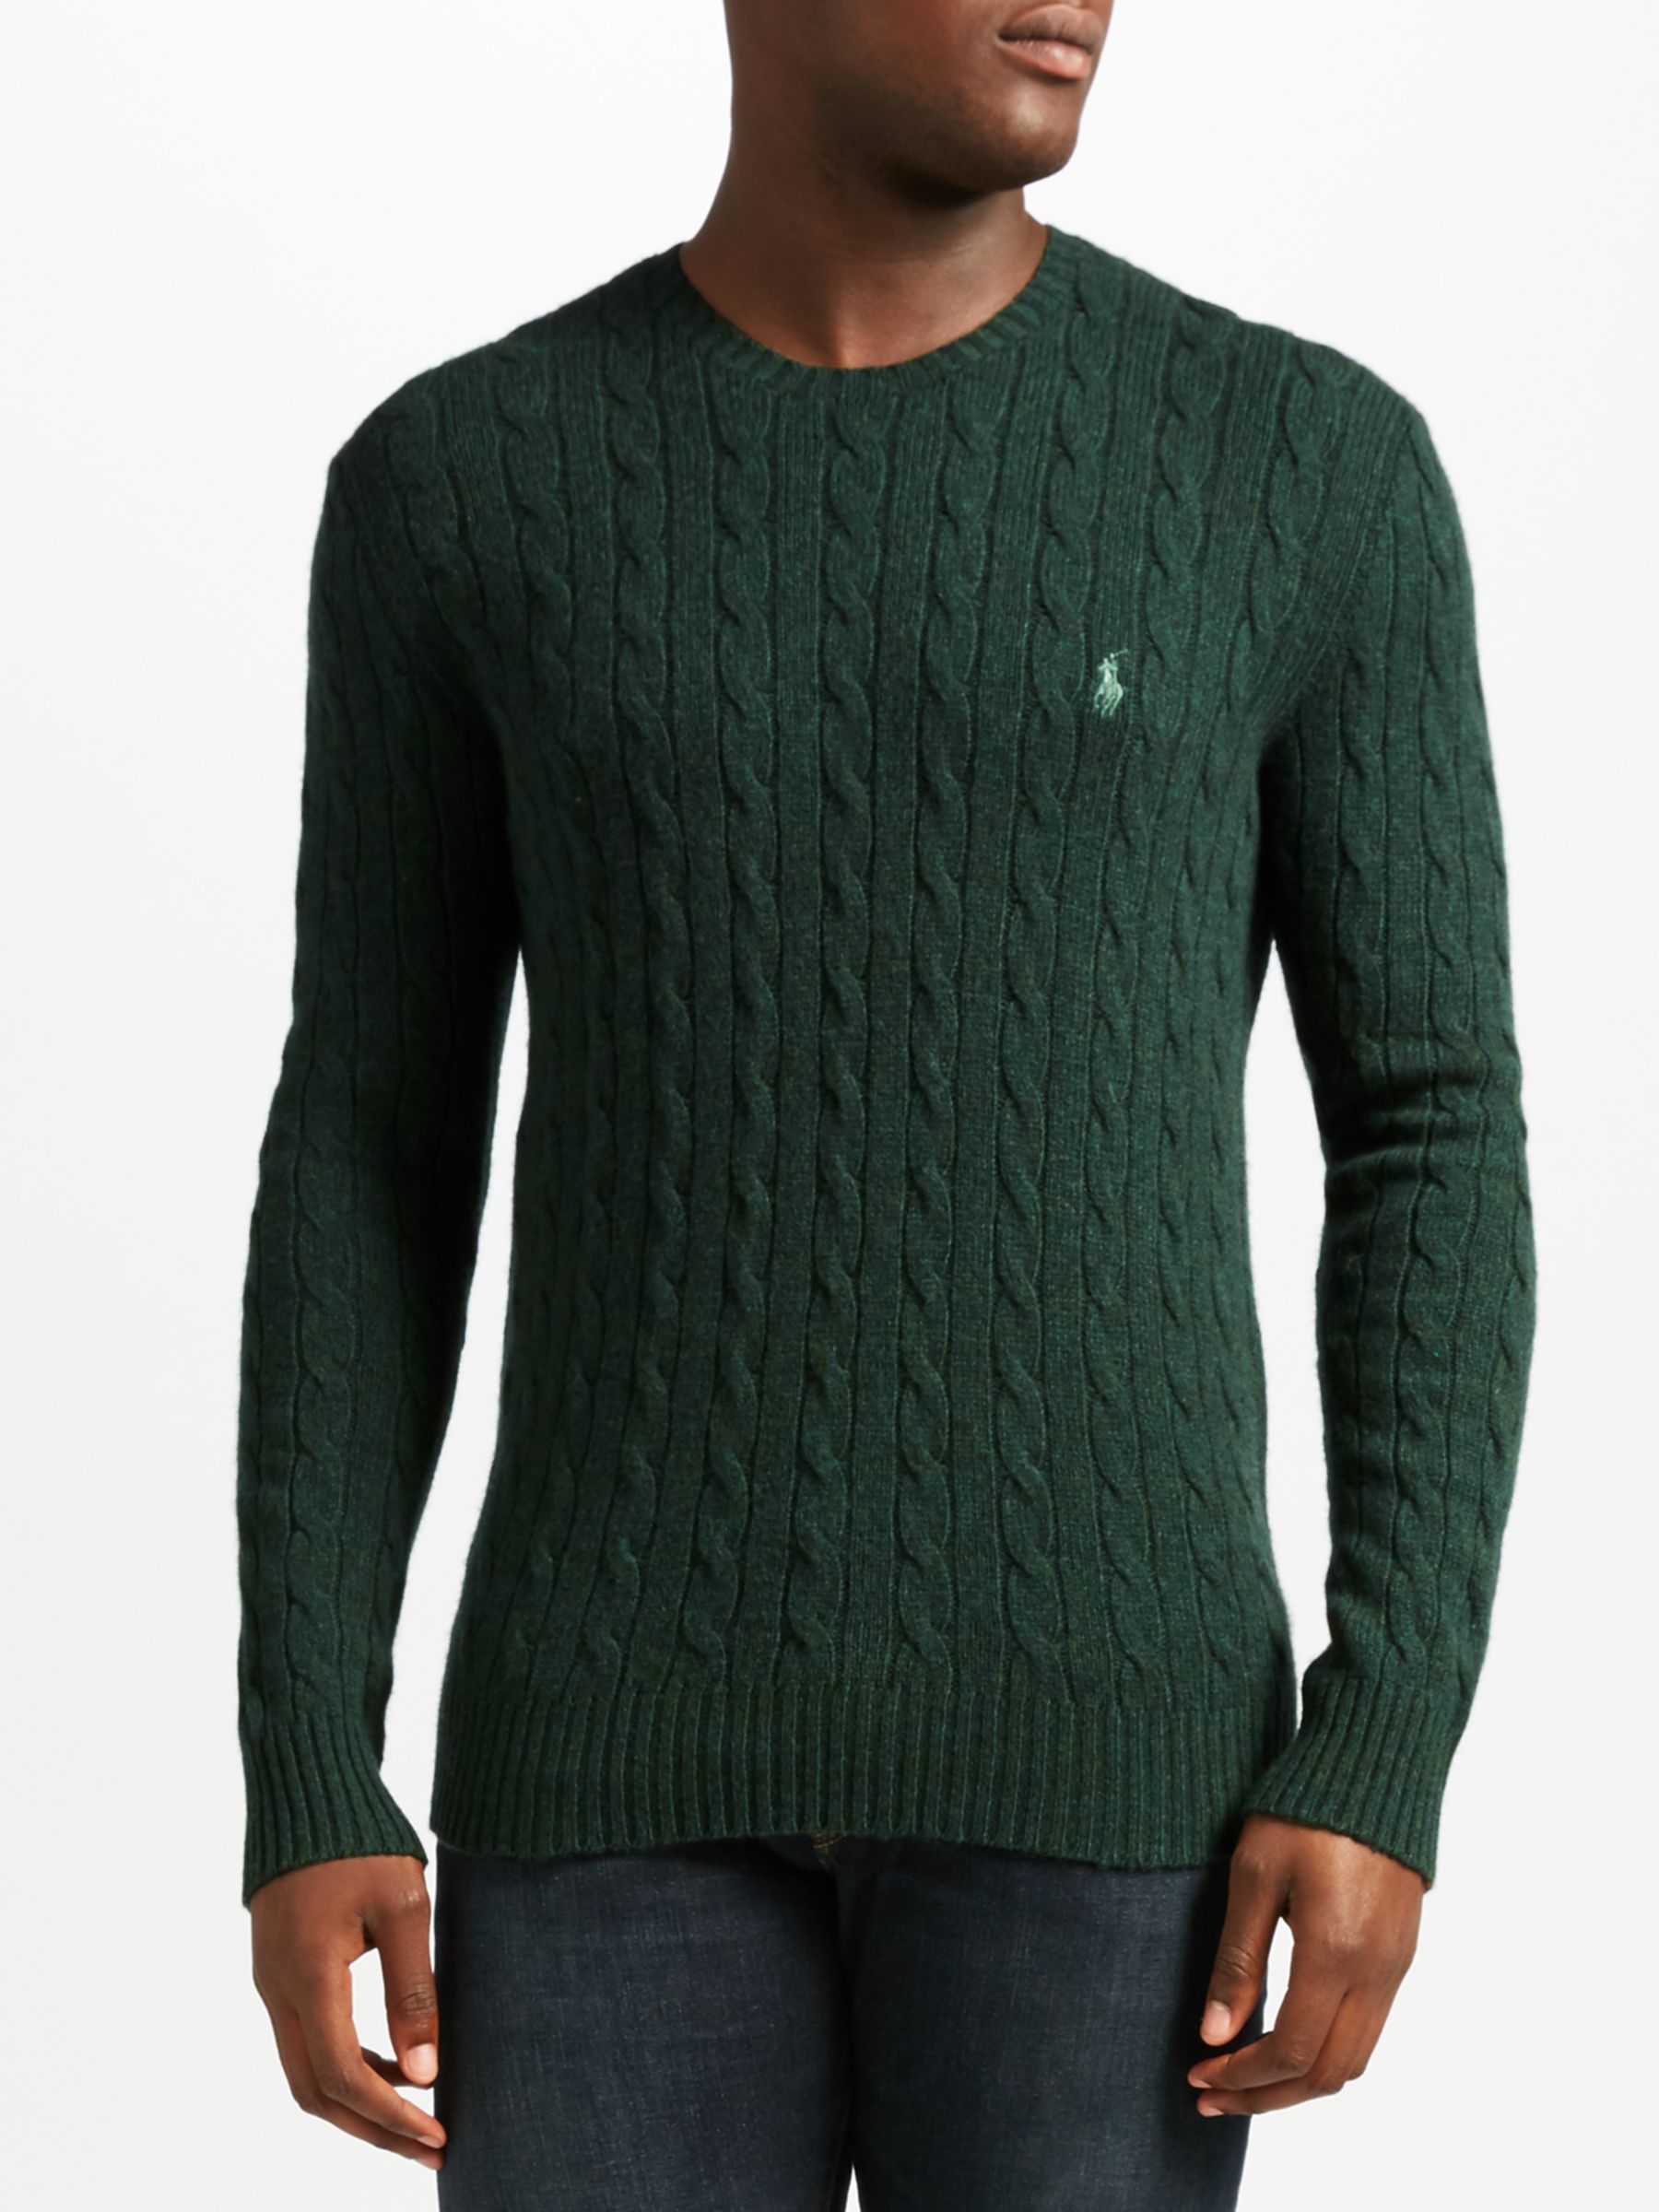 polo ralph lauren green sweater